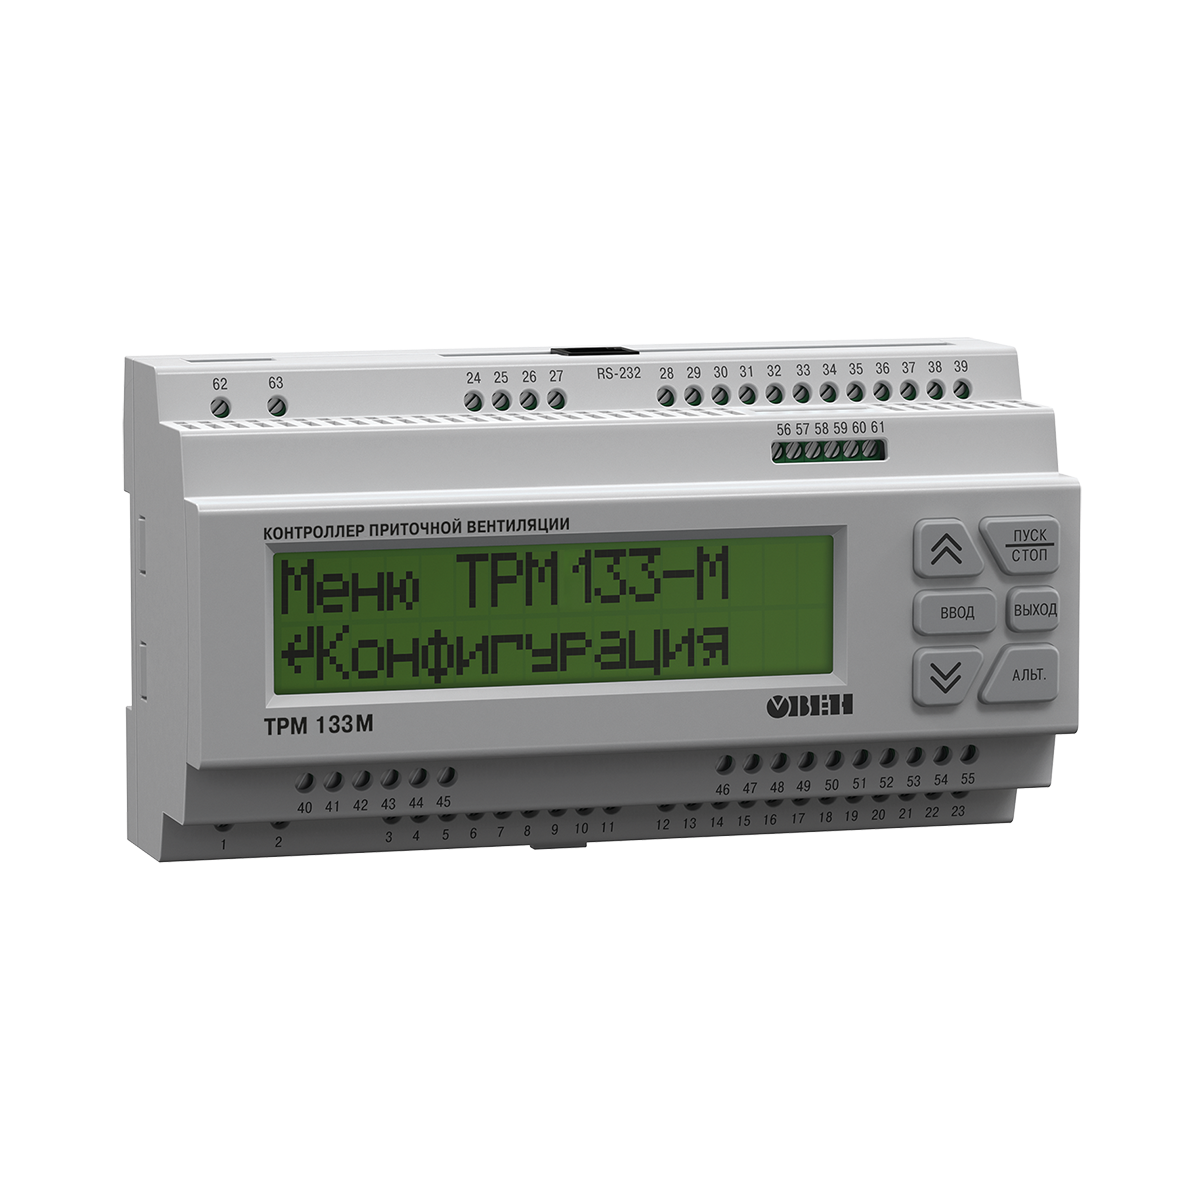 ТРМ133М контроллер для приточно-вытяжной вентиляции